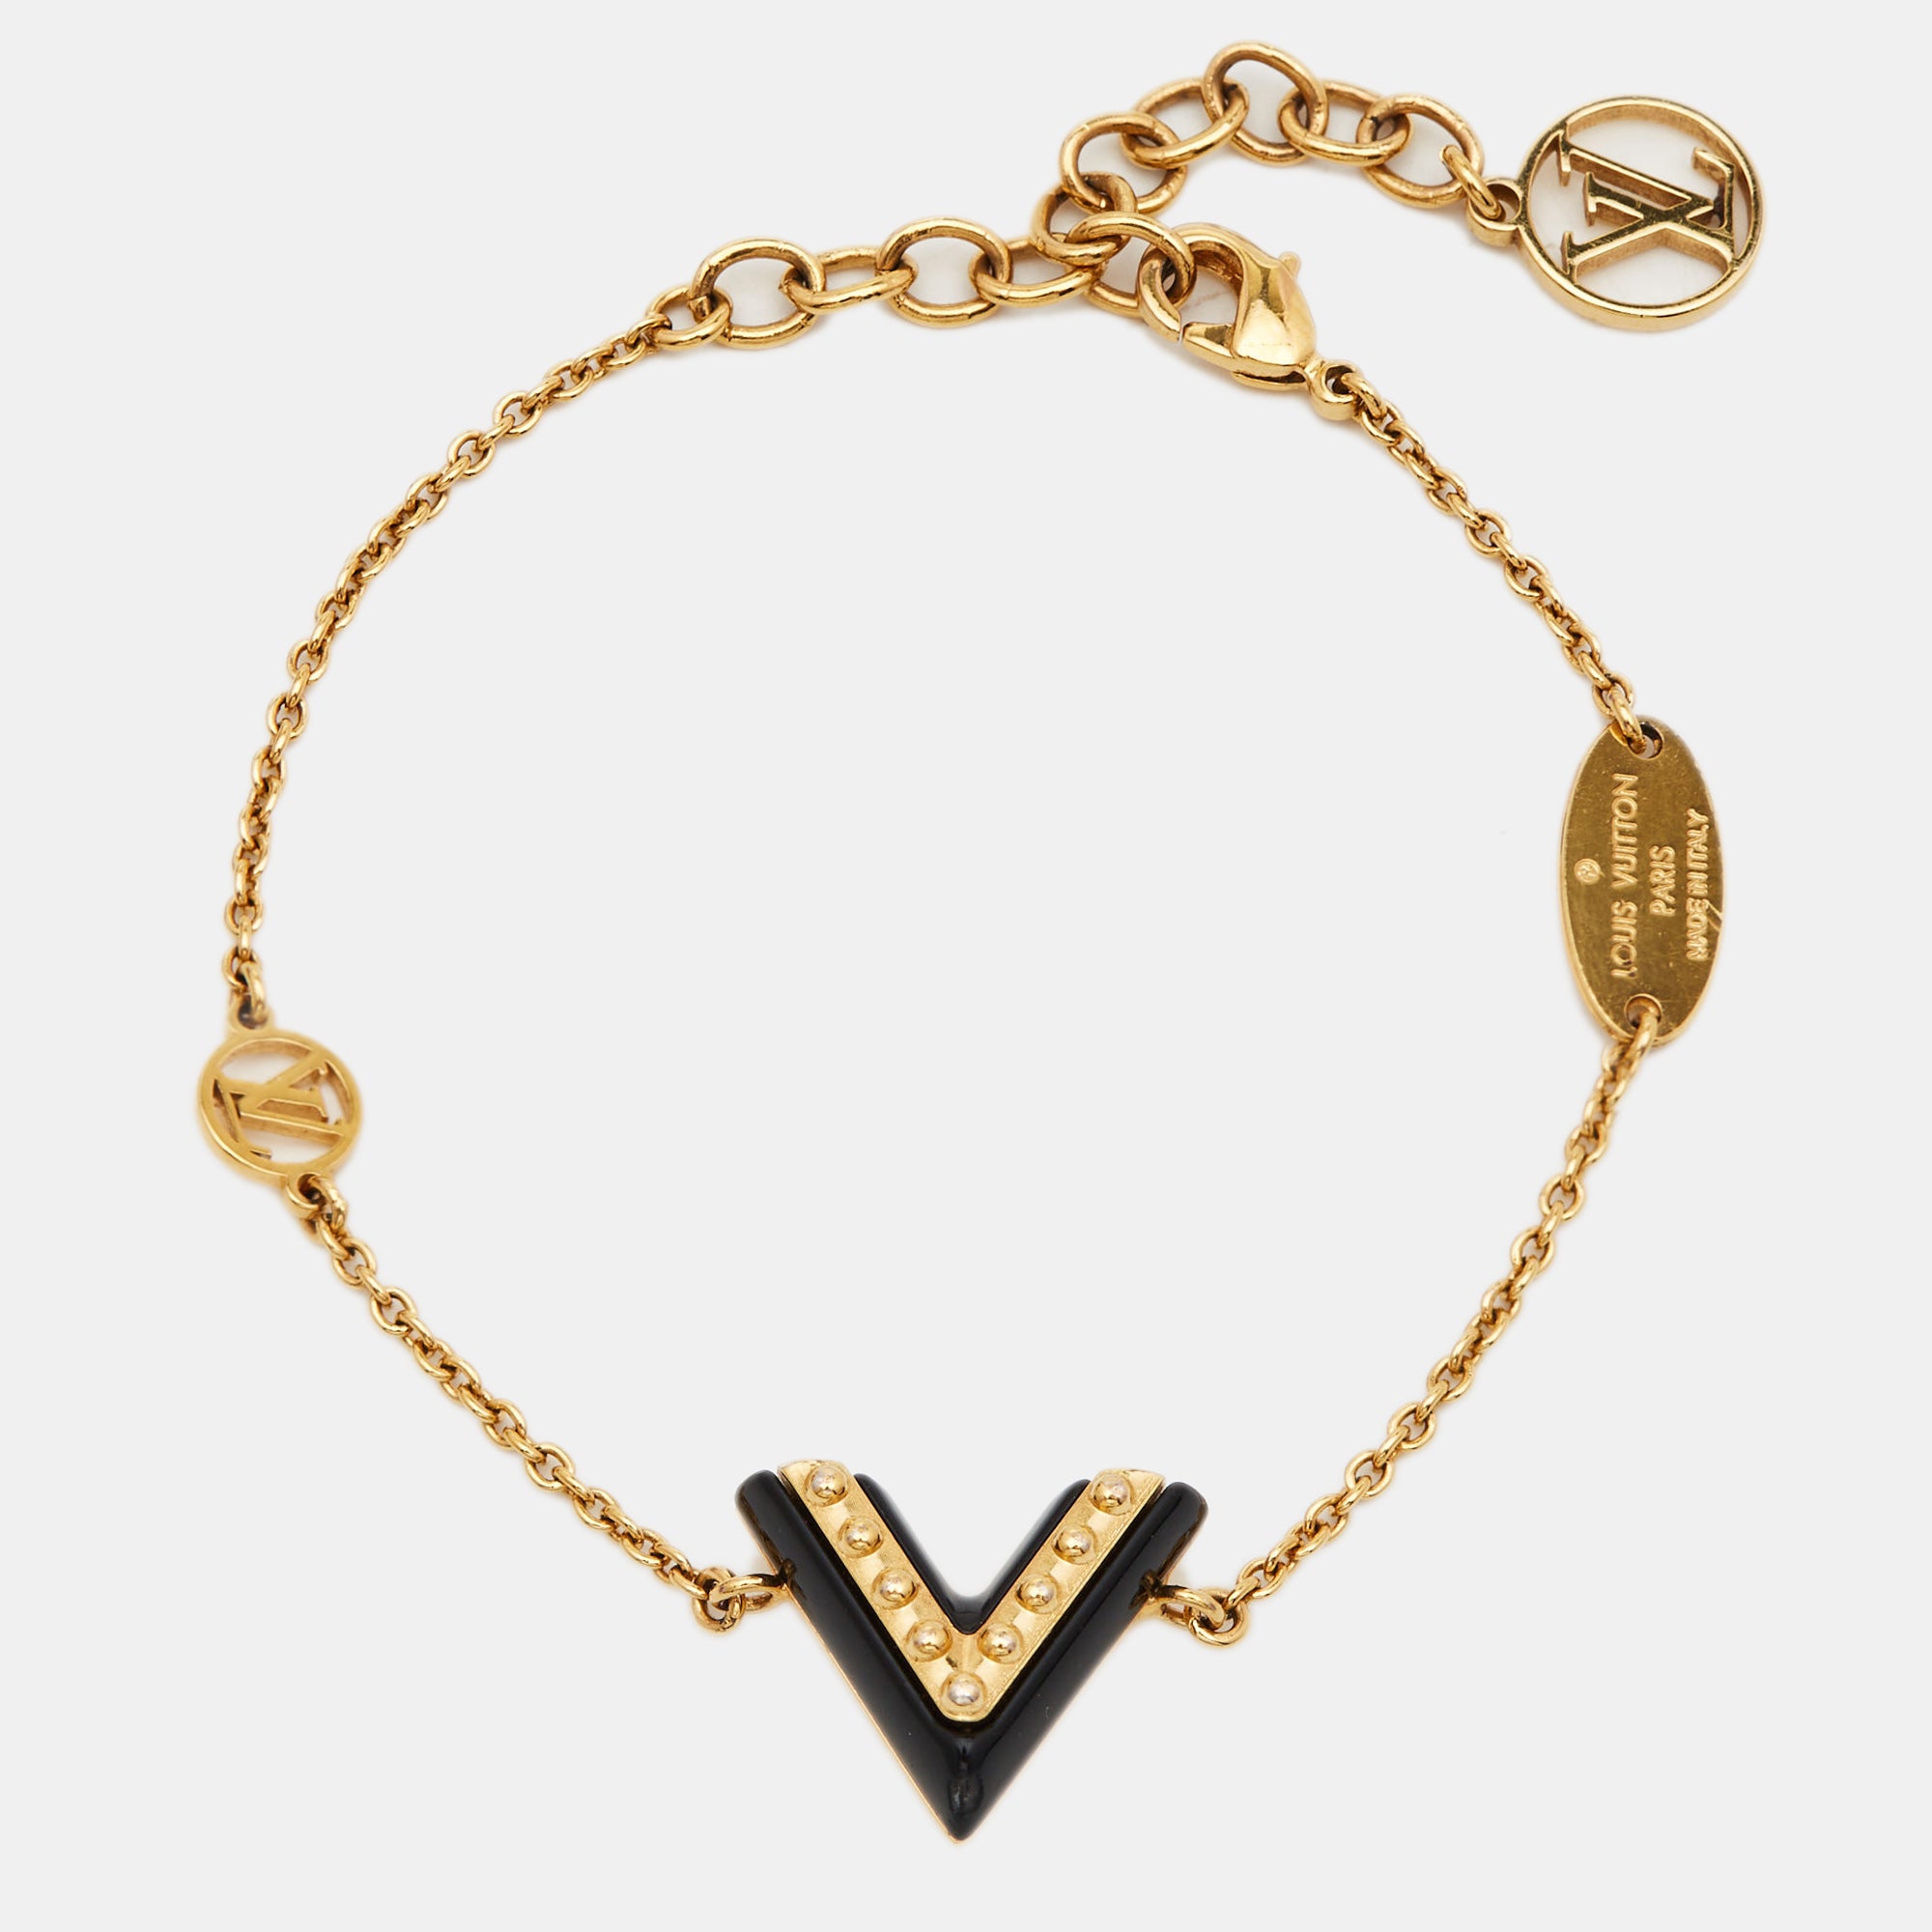 LOUIS VUITTON Bracelet Bangle LV and ME LOVE Gold GP M62844 authentic | eBay